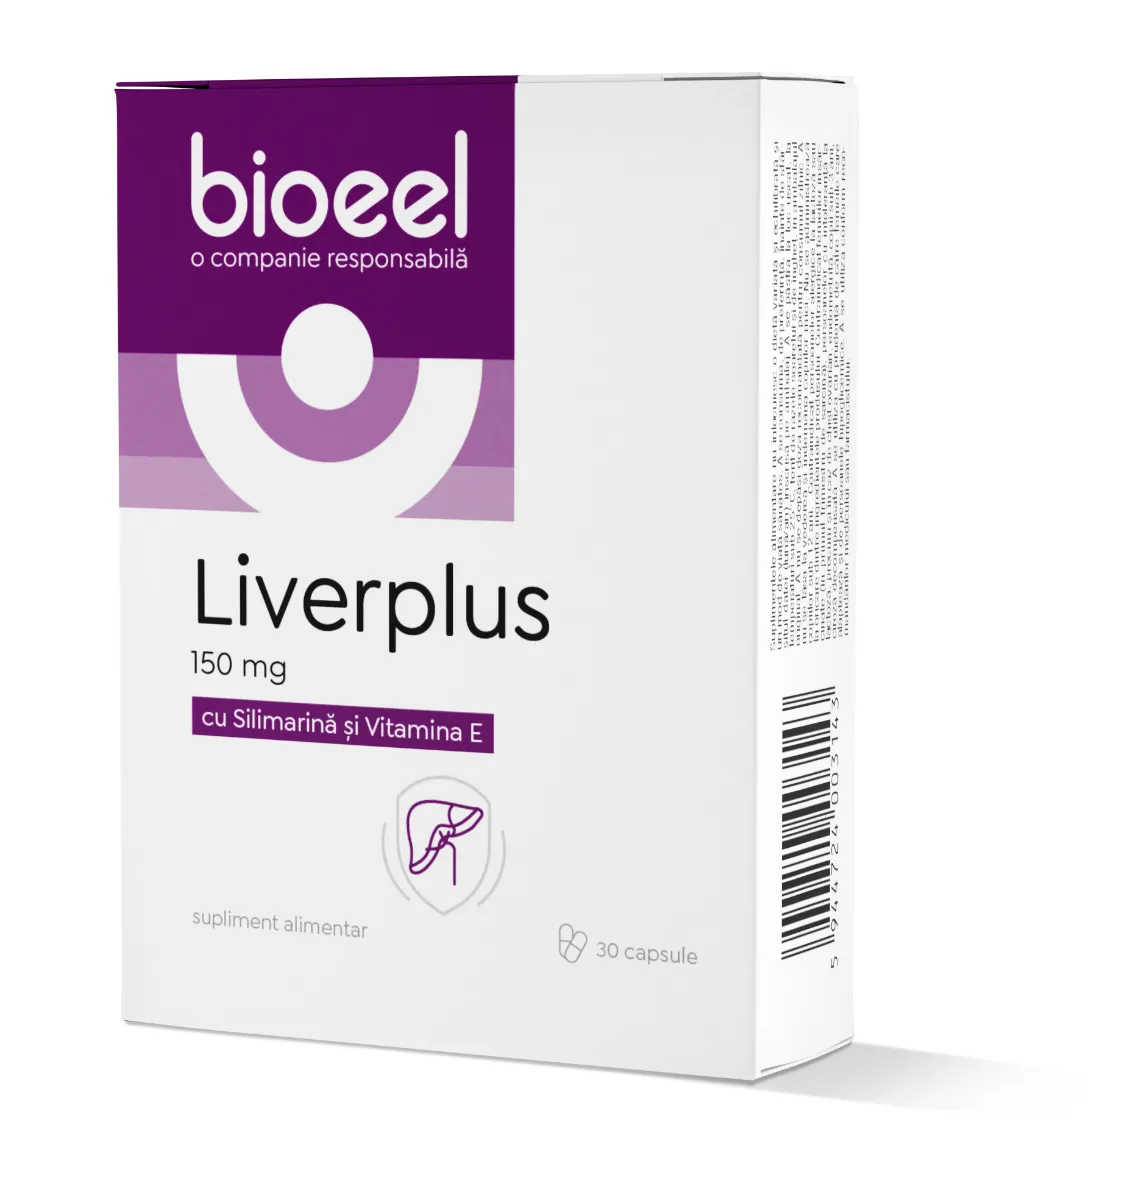 Liverplus 150mg, 30 capsule, Bioeel 